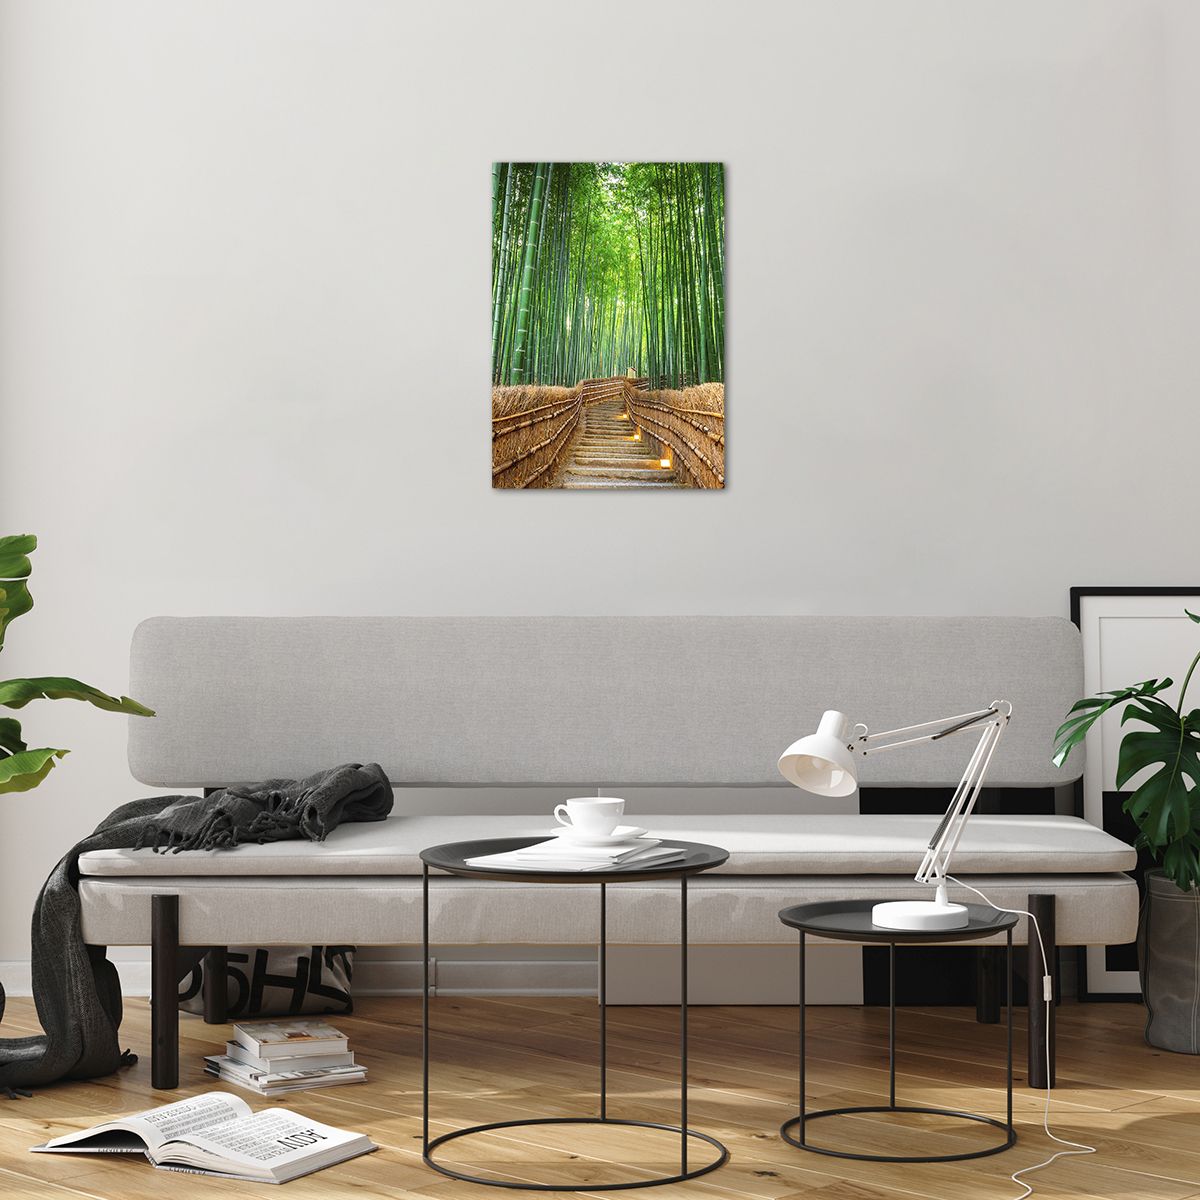 Bild på glas Bambu, Bild på glas Bambuskog, Bild på glas Natur, Bild på glas Landskap, Bild på glas Asien